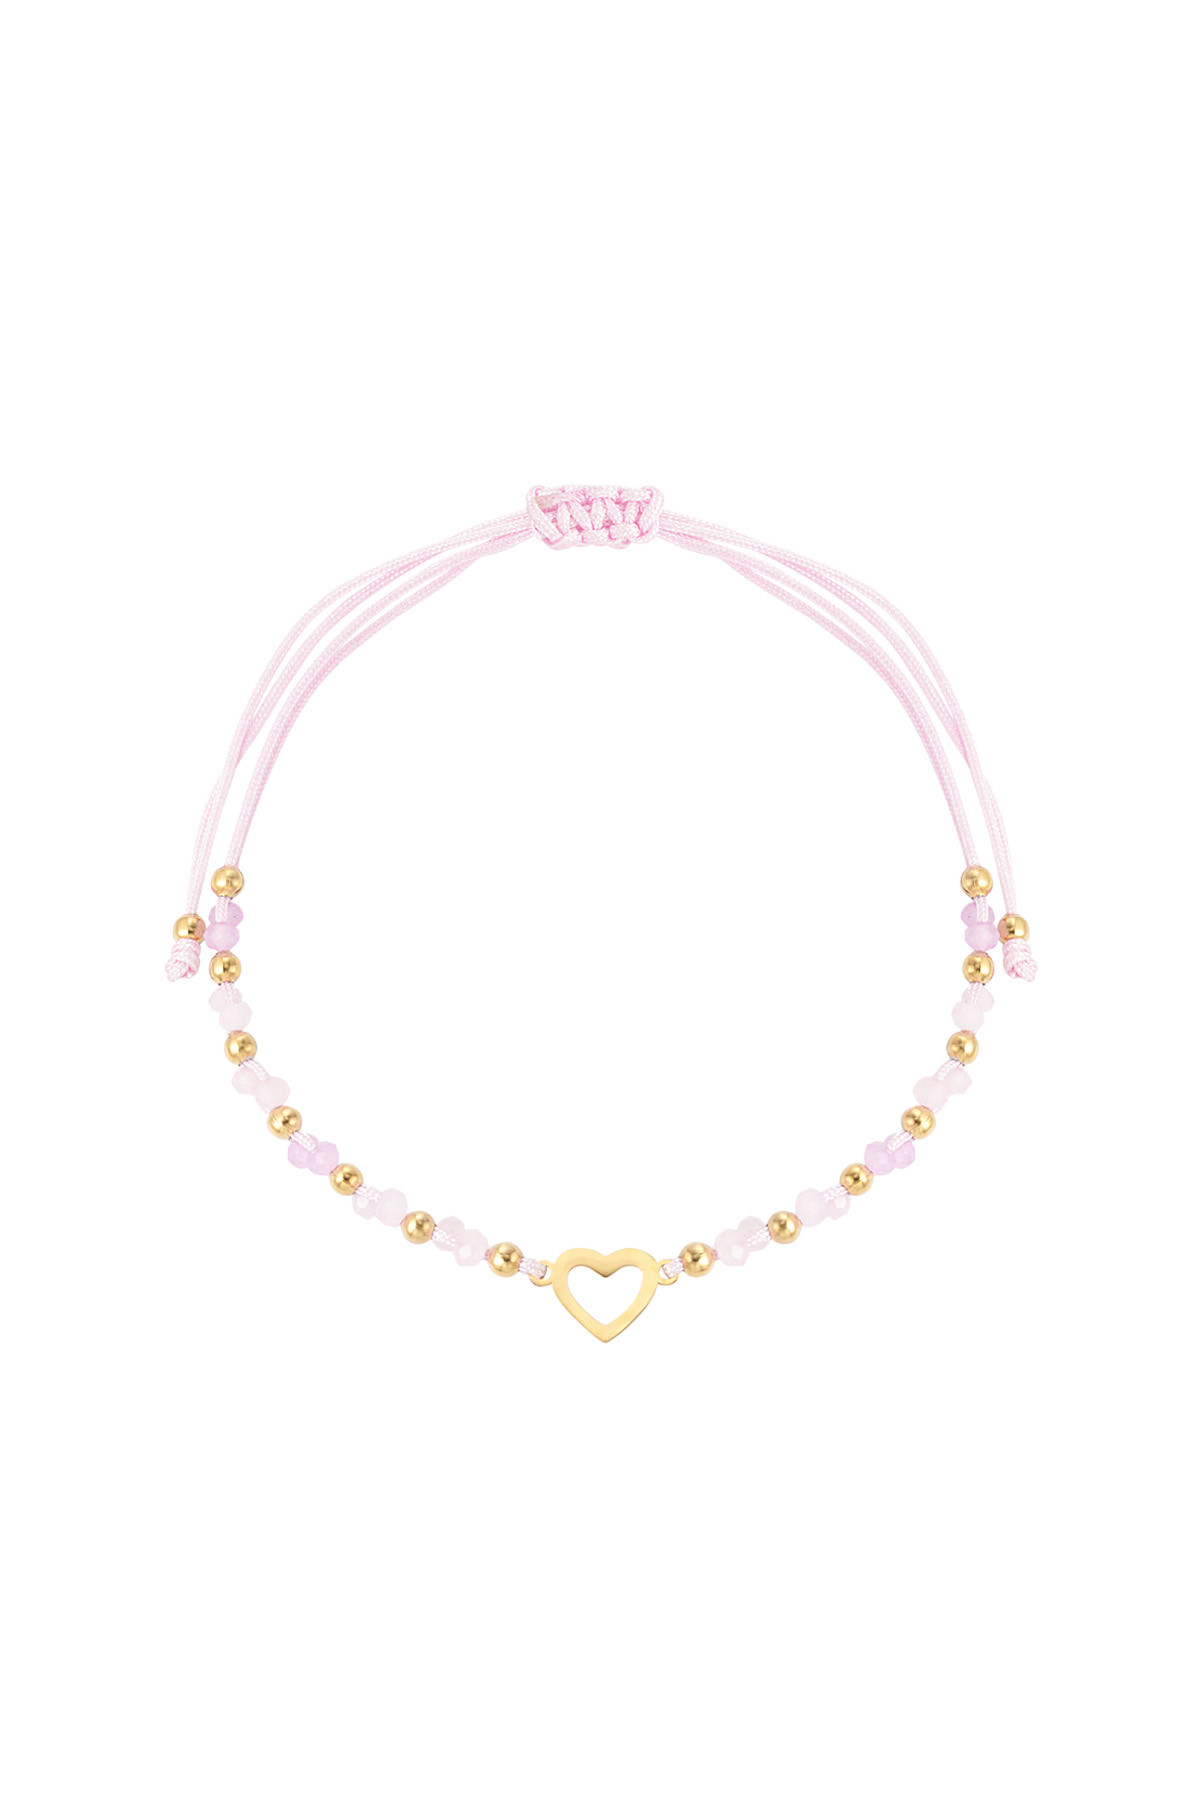 Summer bracelet colorful heart - pink gold